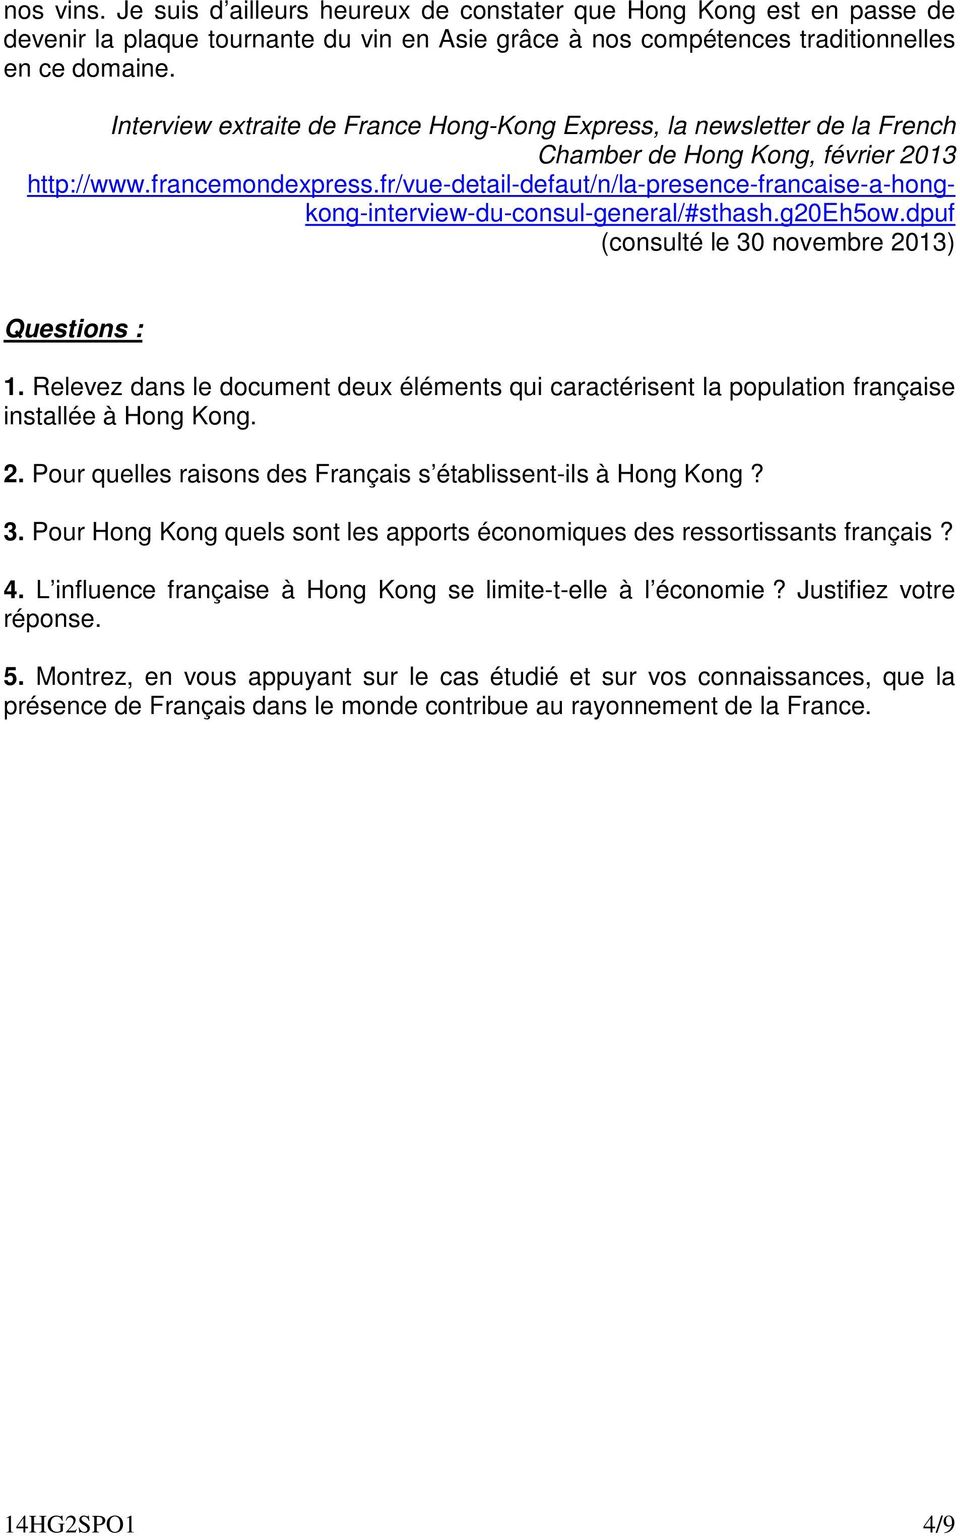 fr/vue-detail-defaut/n/la-presence-francaise-a-hongkong-interview-du-consul-general/#sthash.g20eh5ow.dpuf (consulté le 30 novembre 2013) Questions : 1.